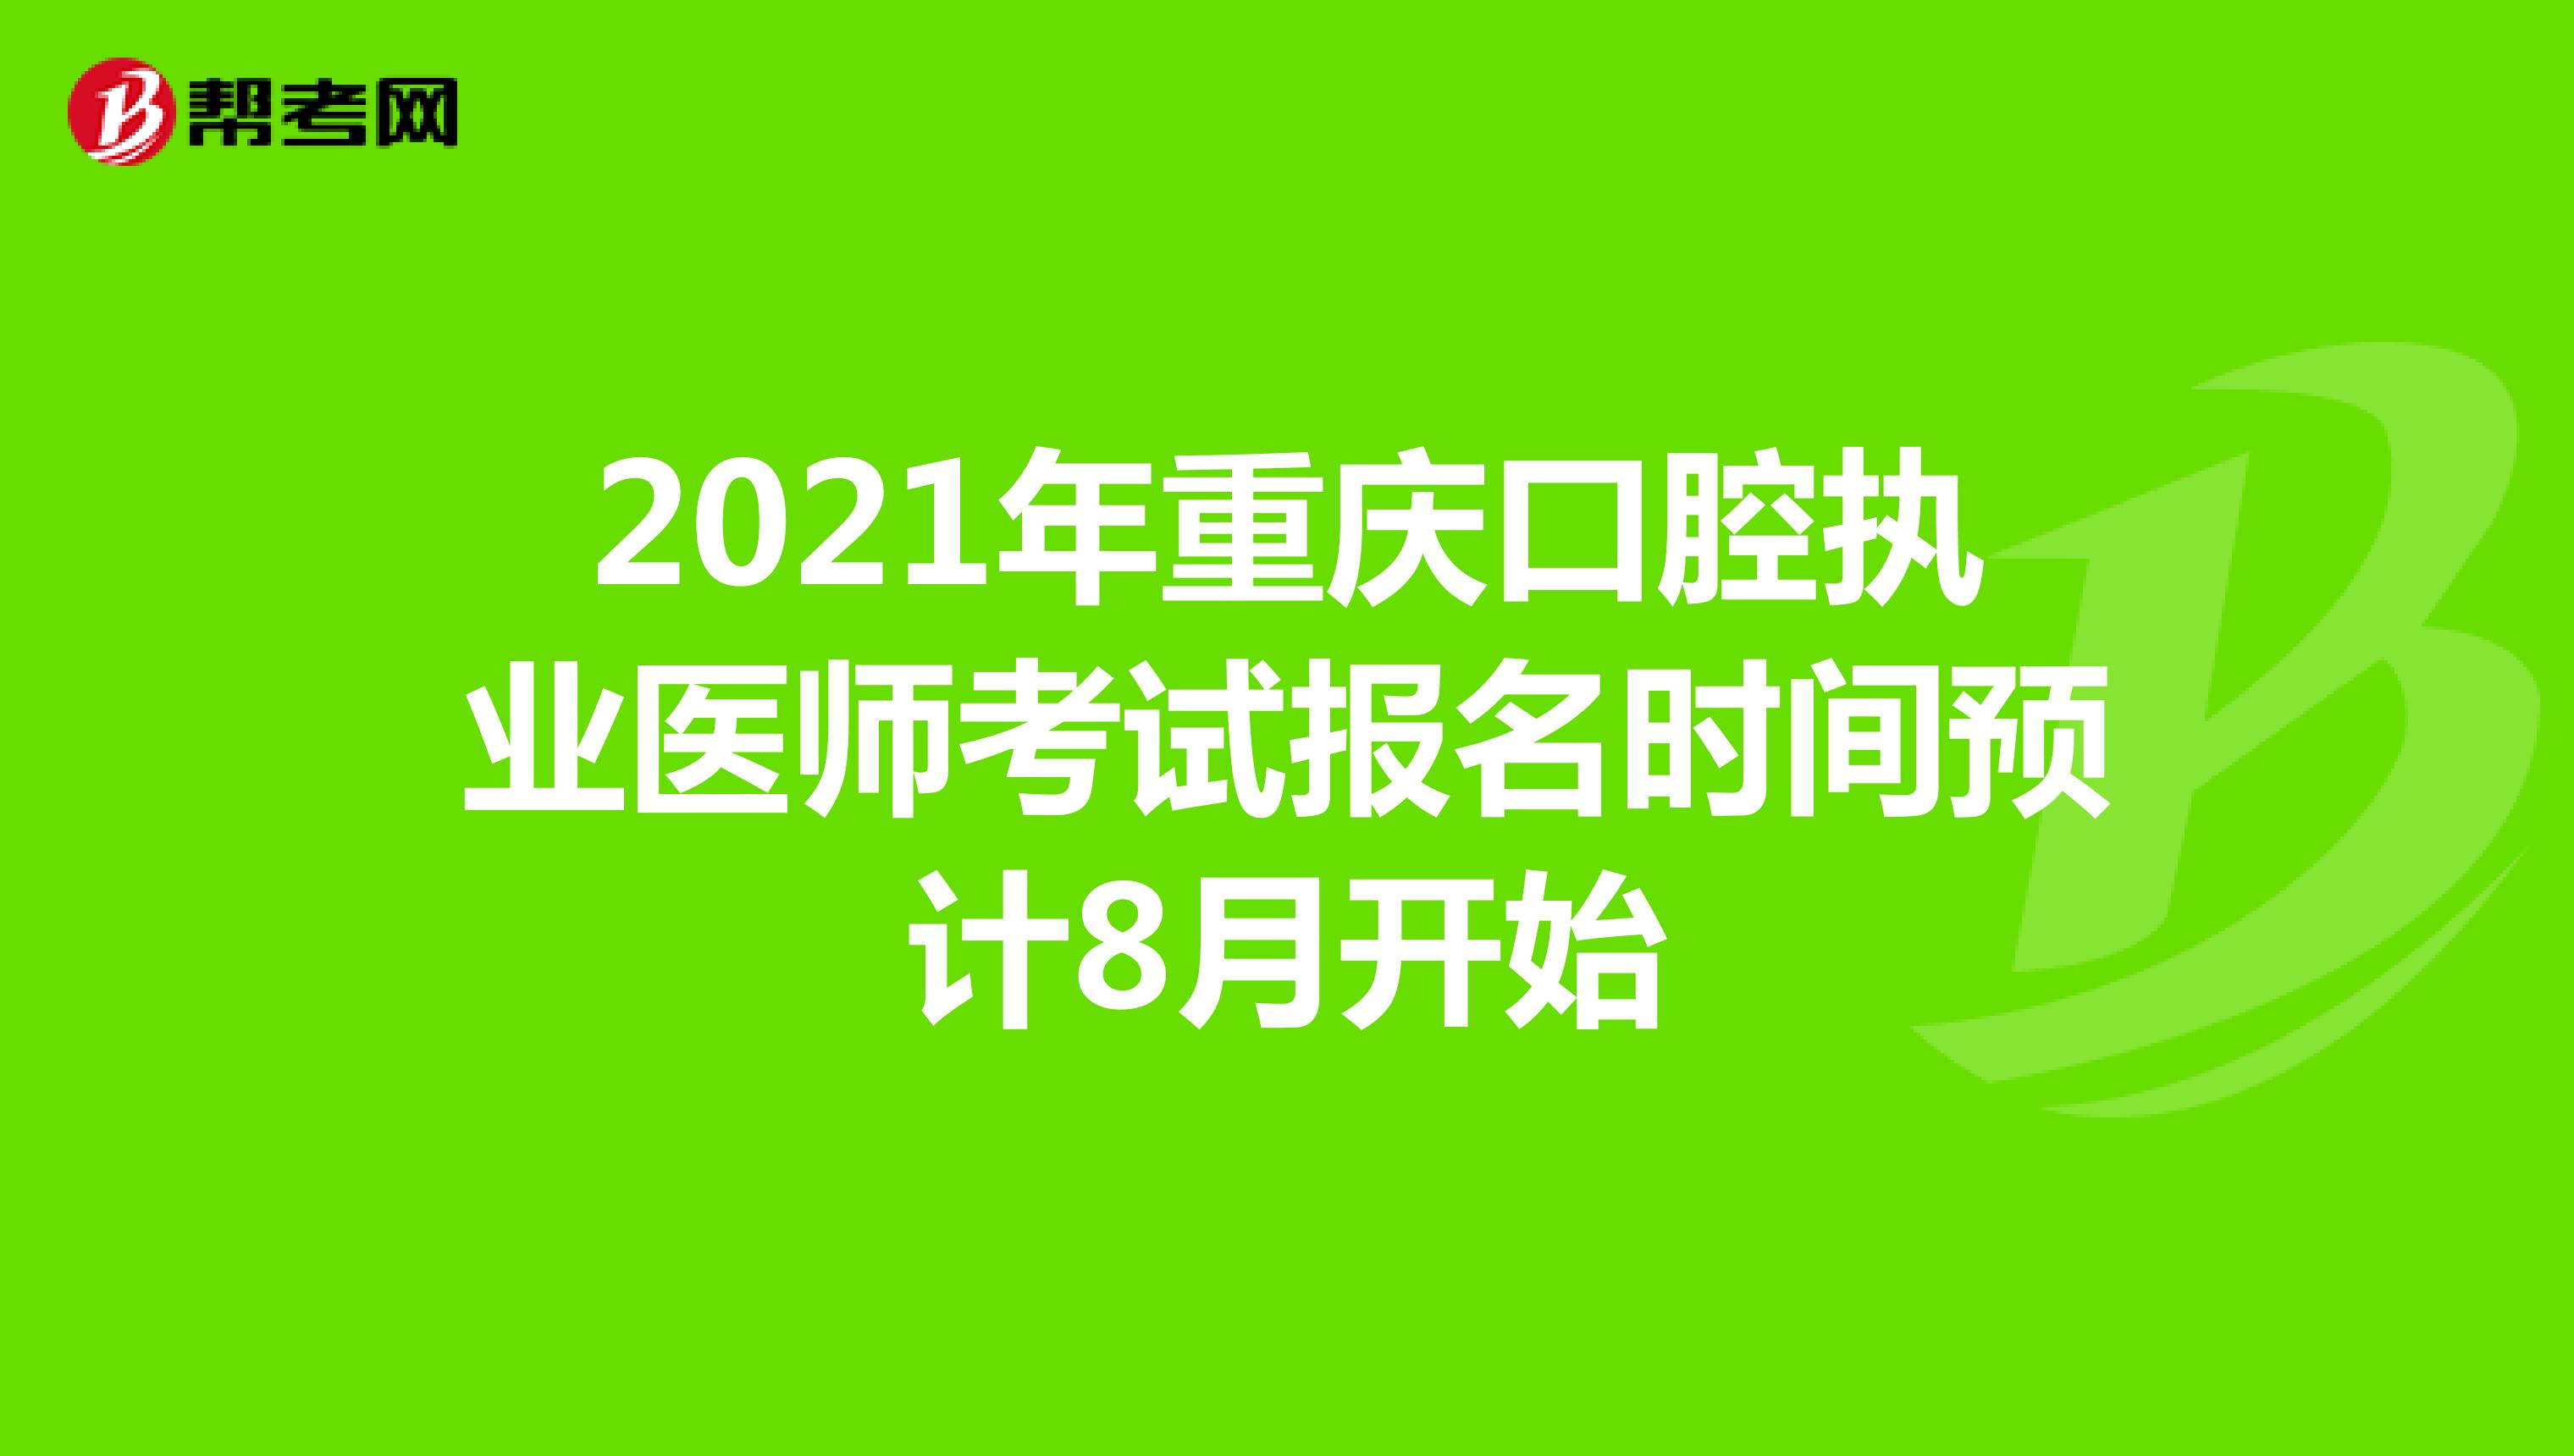 2021年重庆口腔执业医师考试报名时间预计8月开始